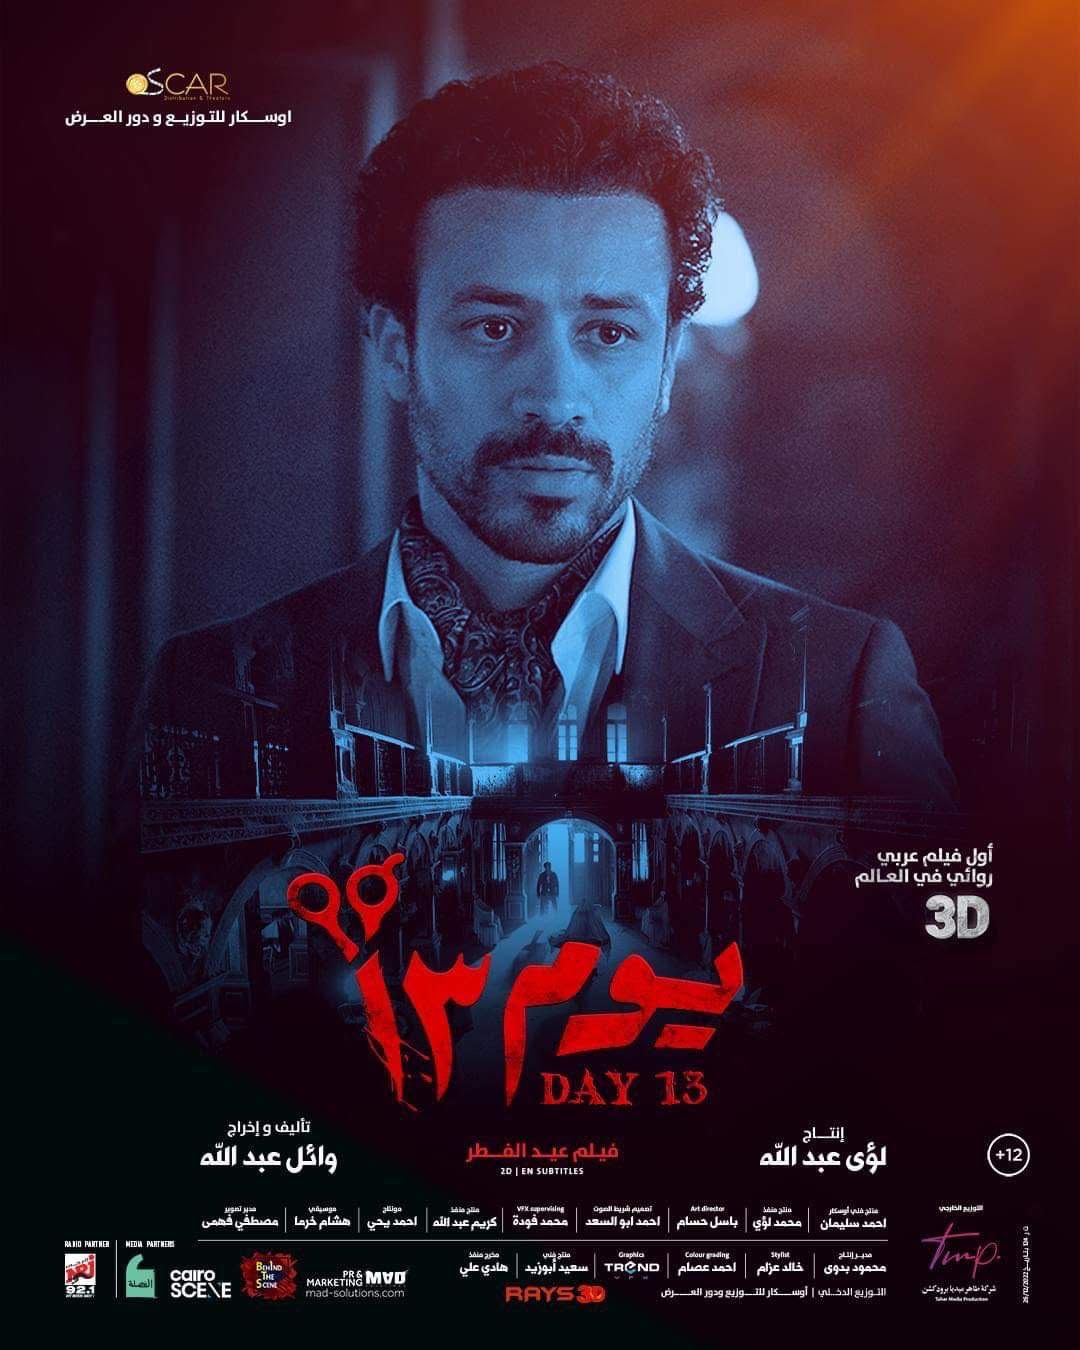 فيلم يوم 13 لـ أحمد داود